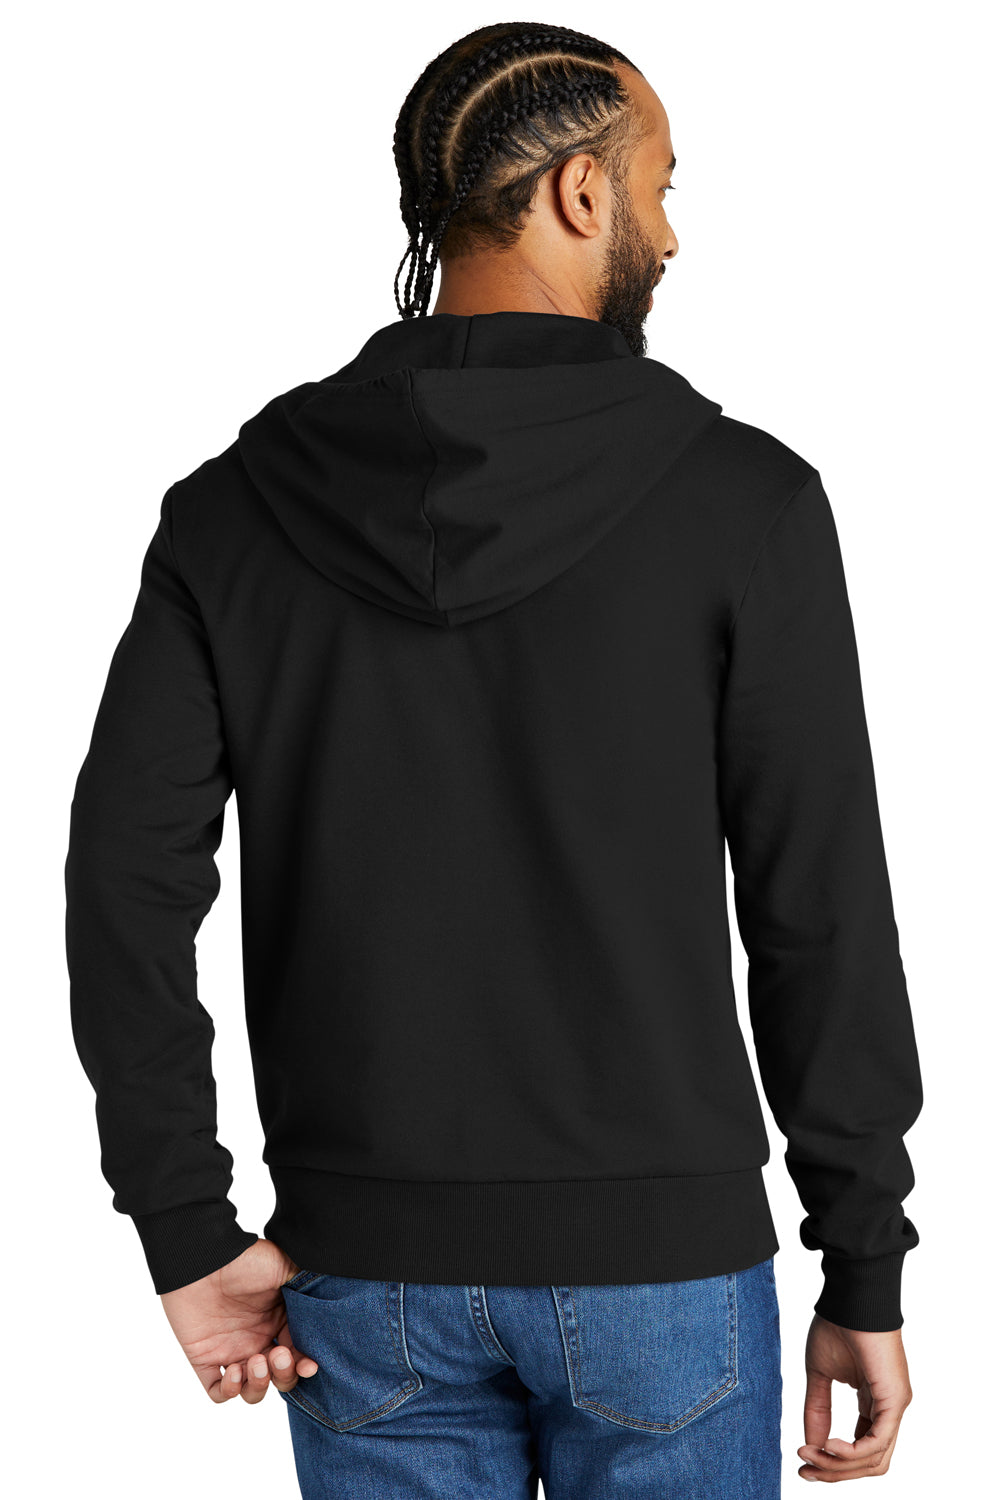 Allmade AL4002 Mens Organic French Terry Full Zip Hooded Sweatshirt Hoodie Deep Black Model Back